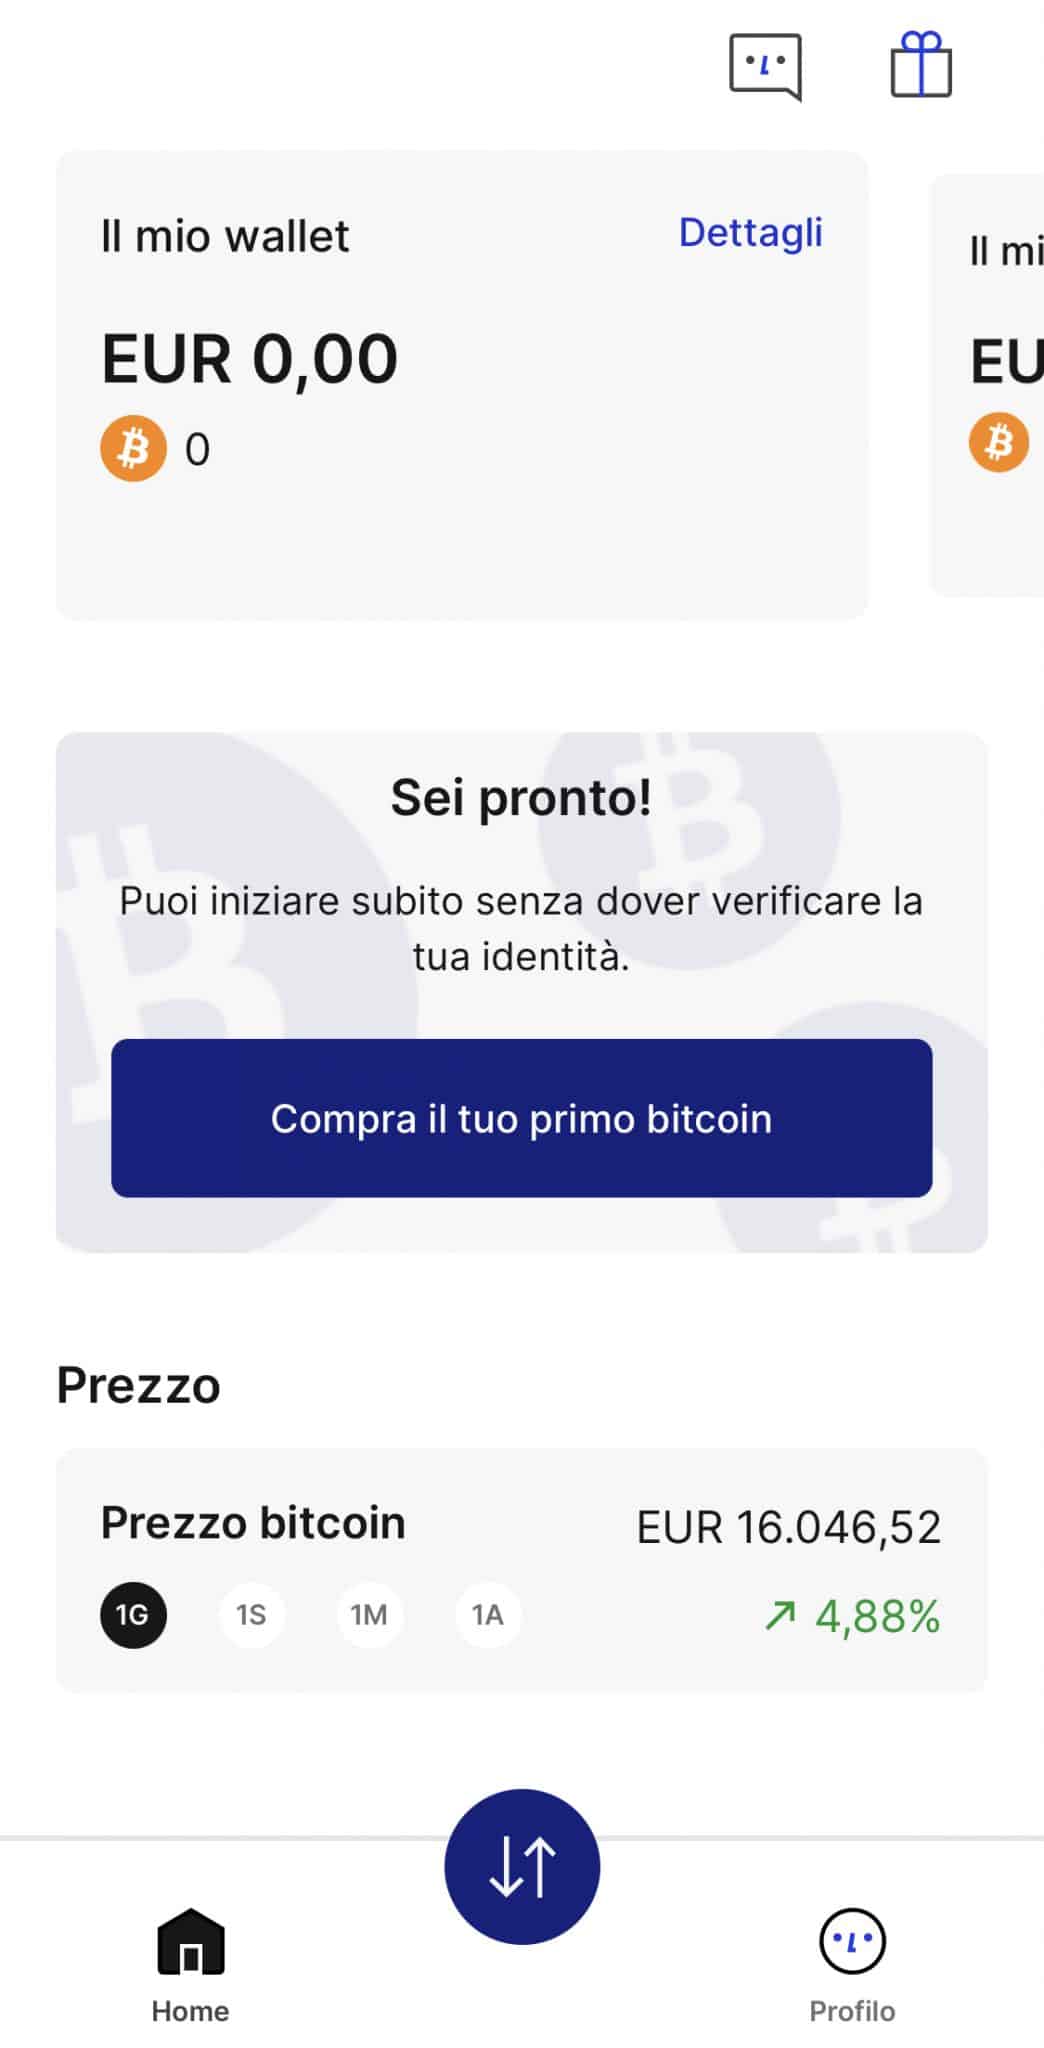 Schermata principale di Relai, con la possibilità di comprare o vendere Bitcoin